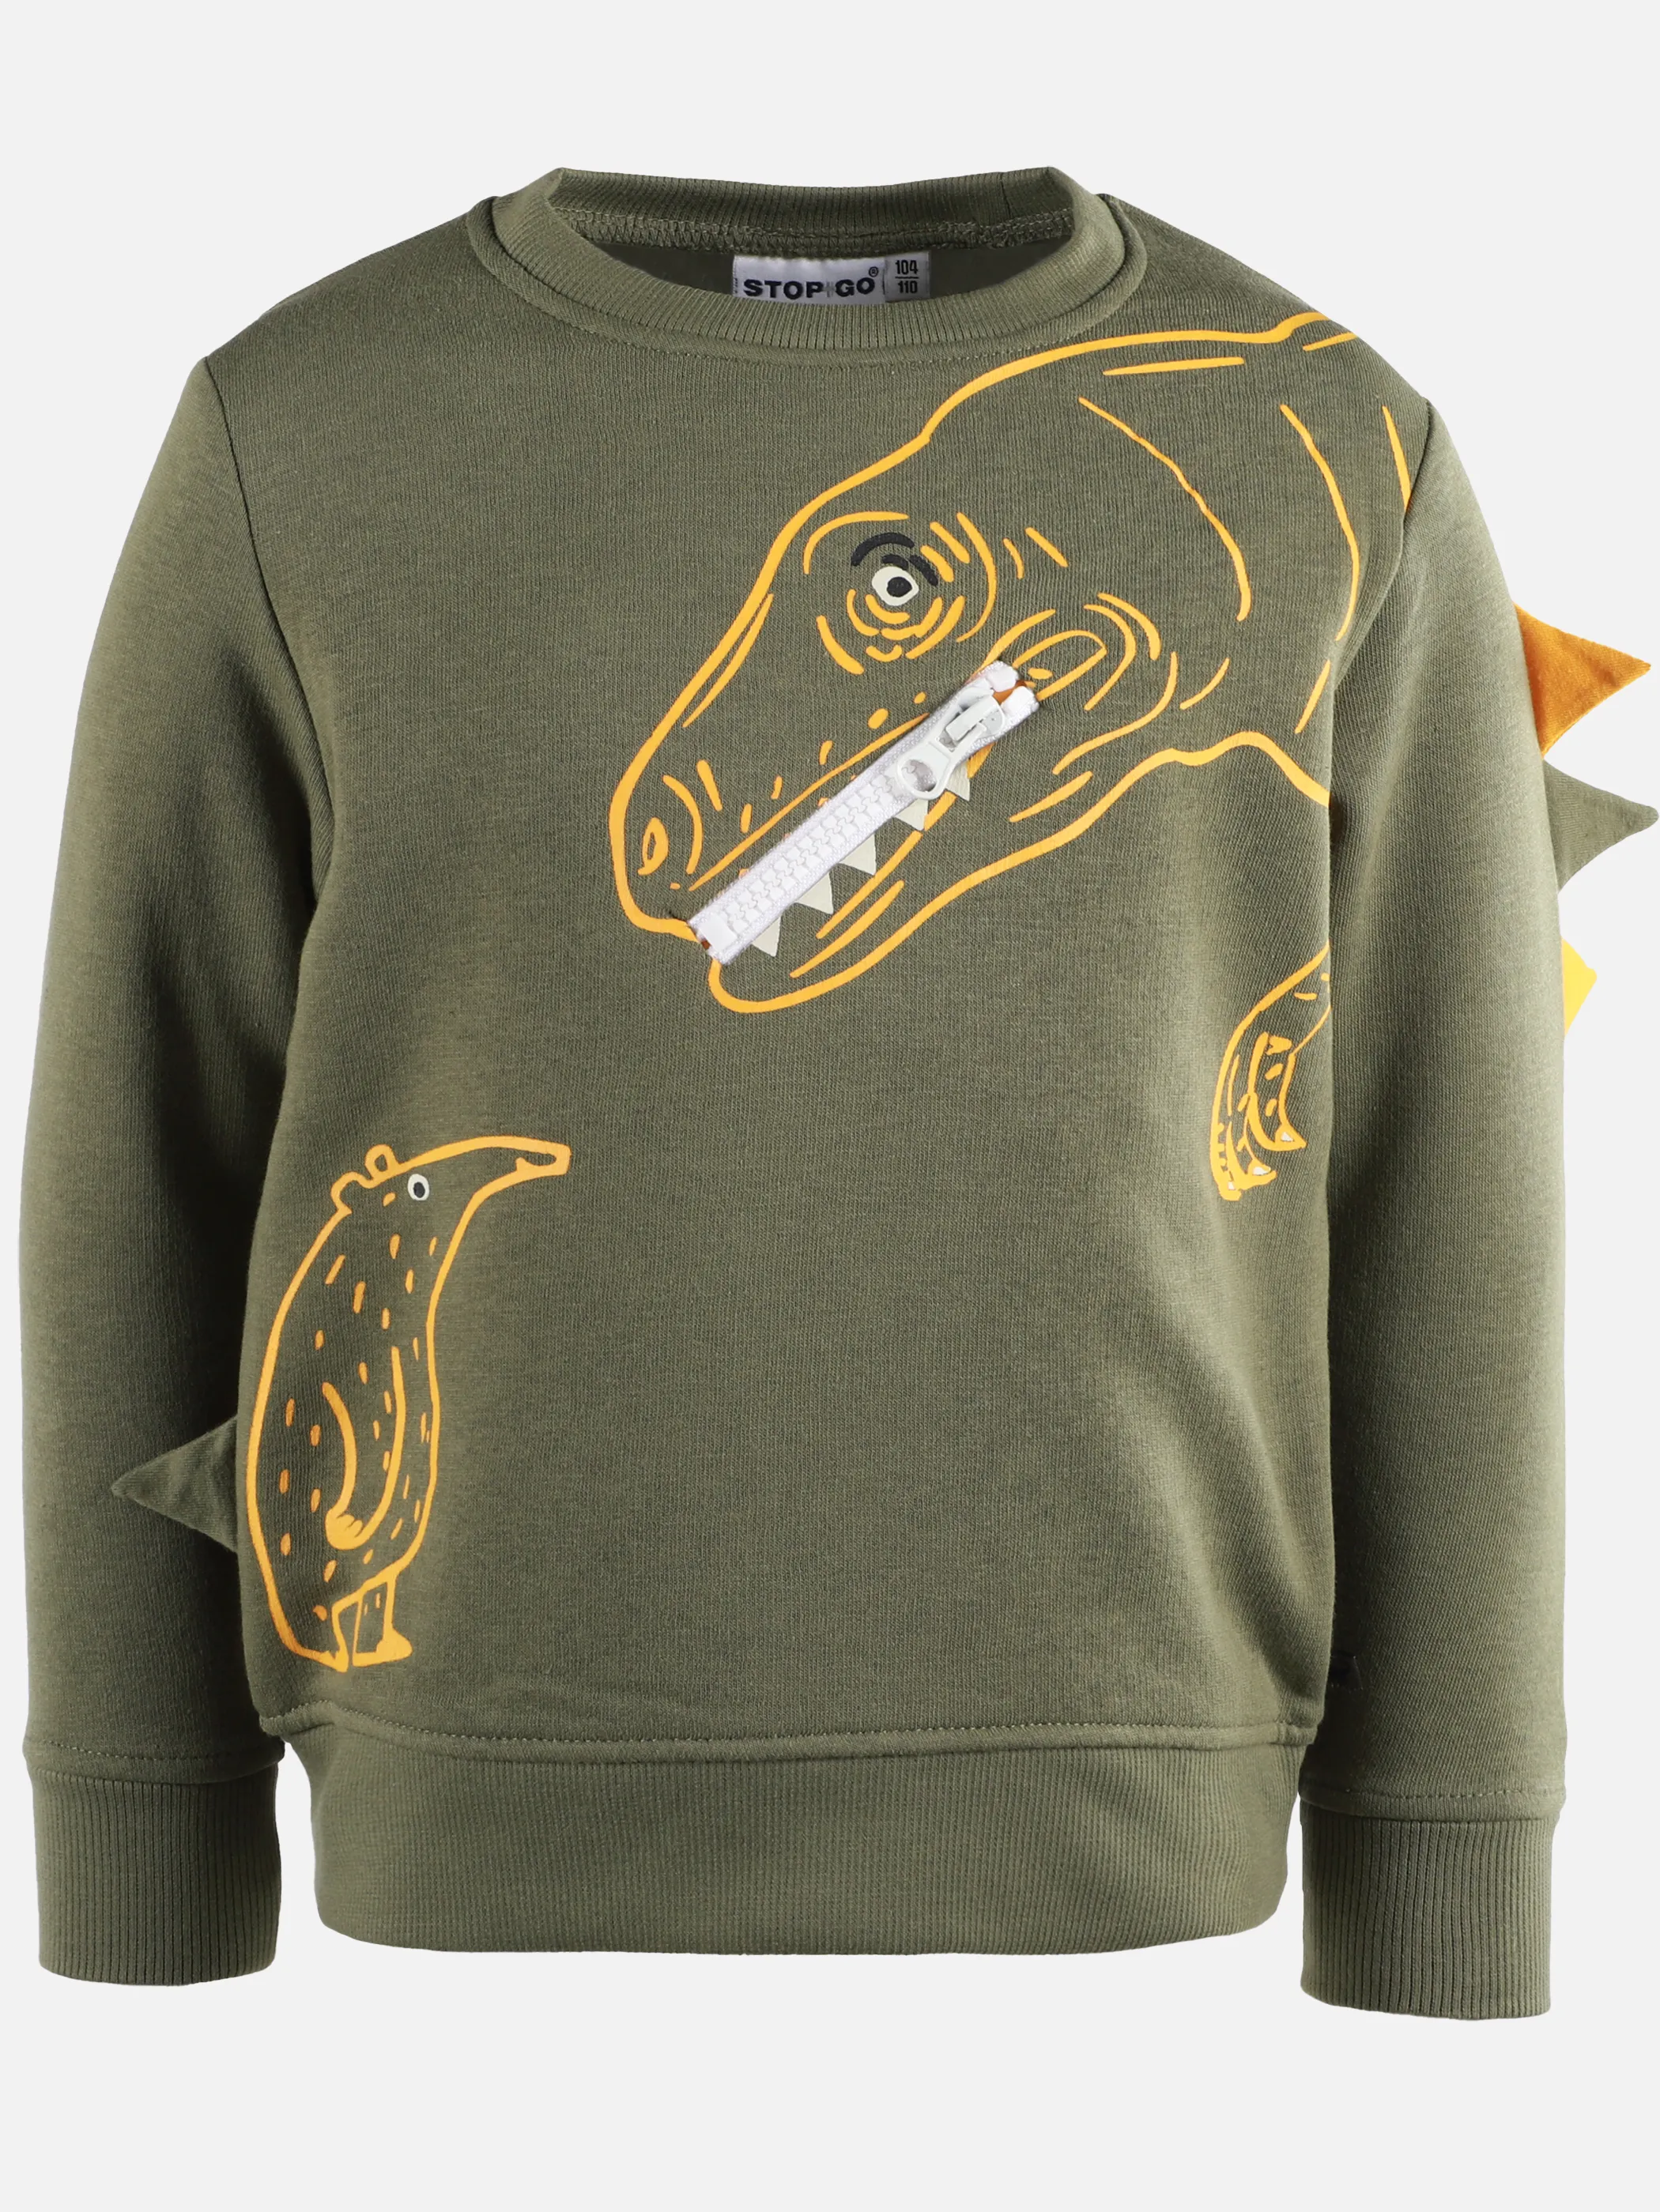 Stop + Go KJ Sweatshirt in grün mit Dinoprint Grün 900299 GRÜN 1